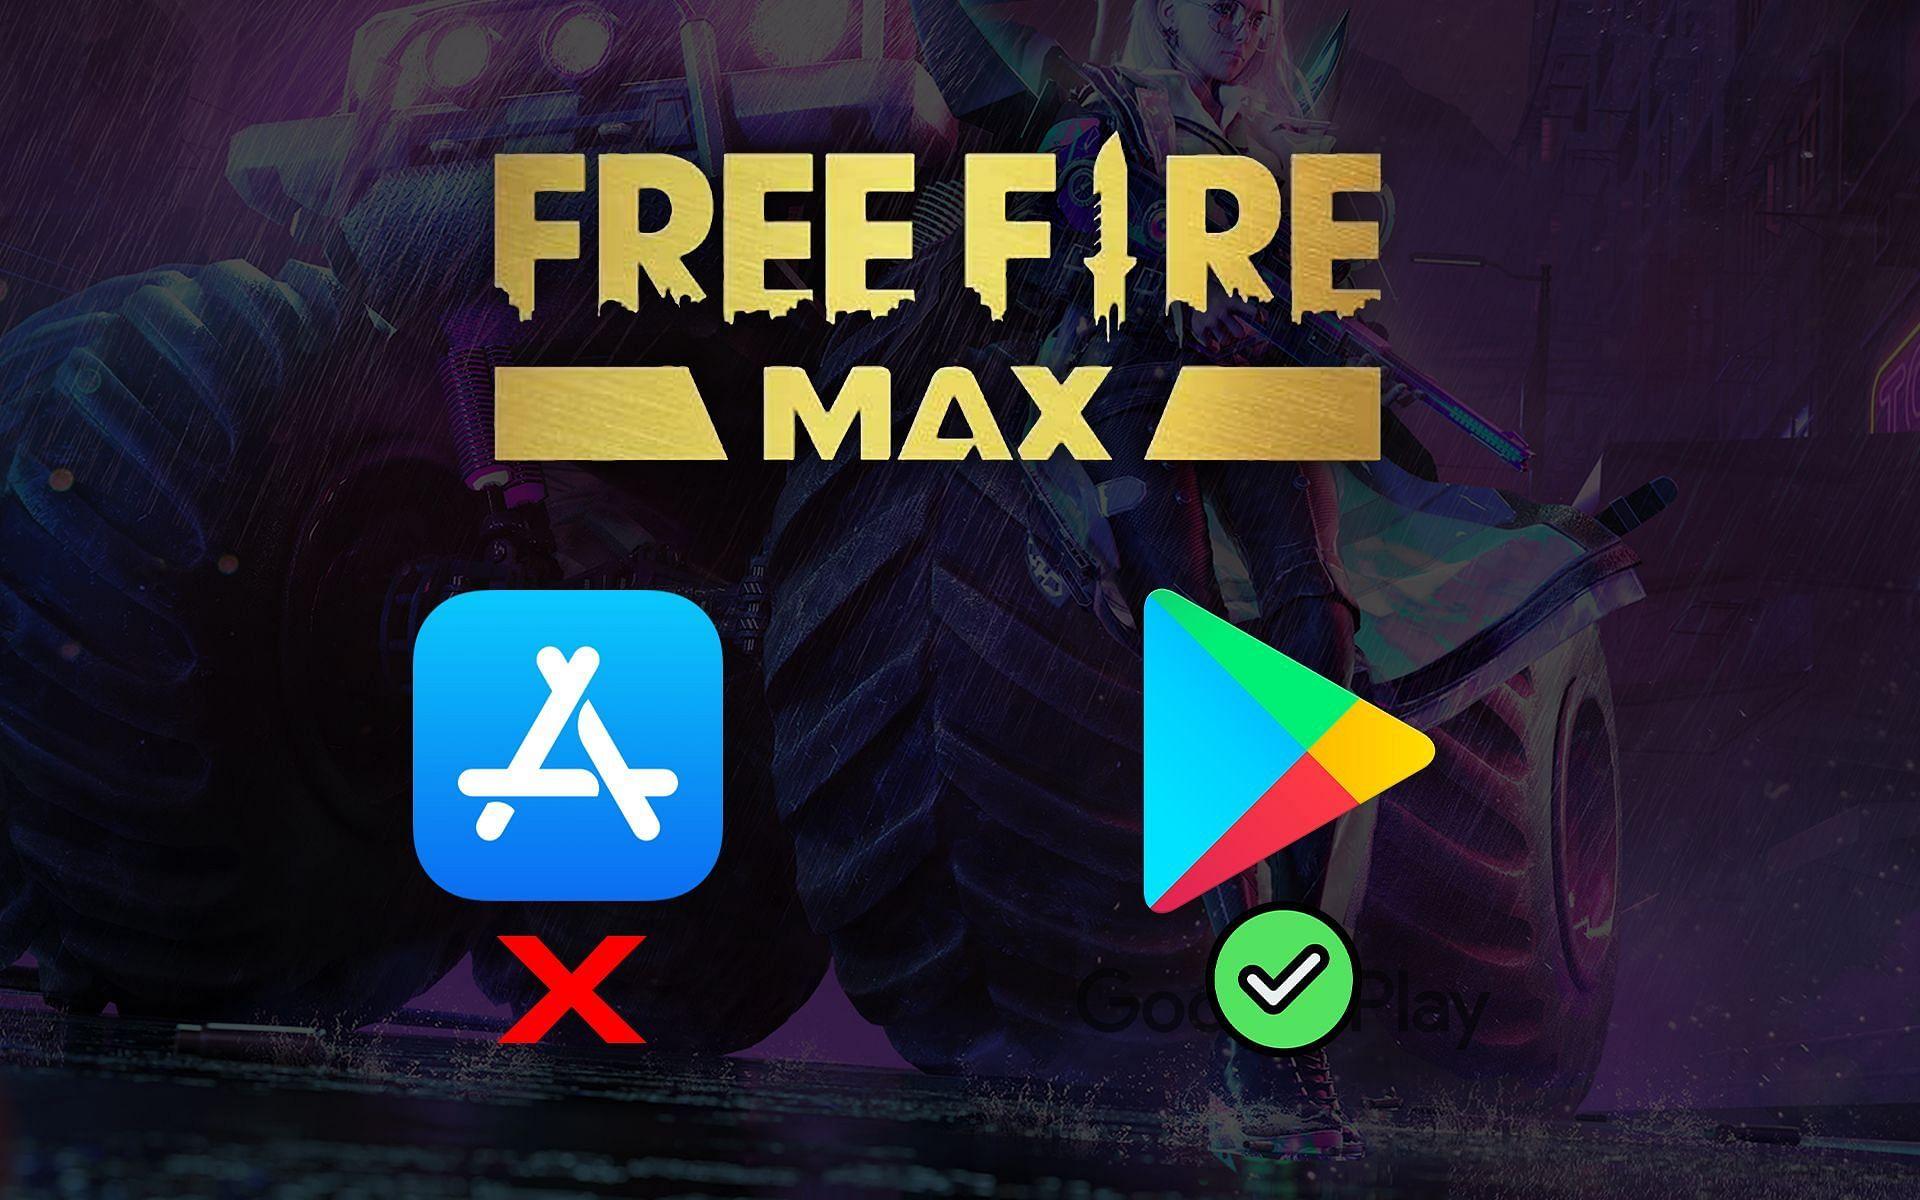 Free fire max foi banido do Brasil e não vai voltar mas o jogo NÃO VAI